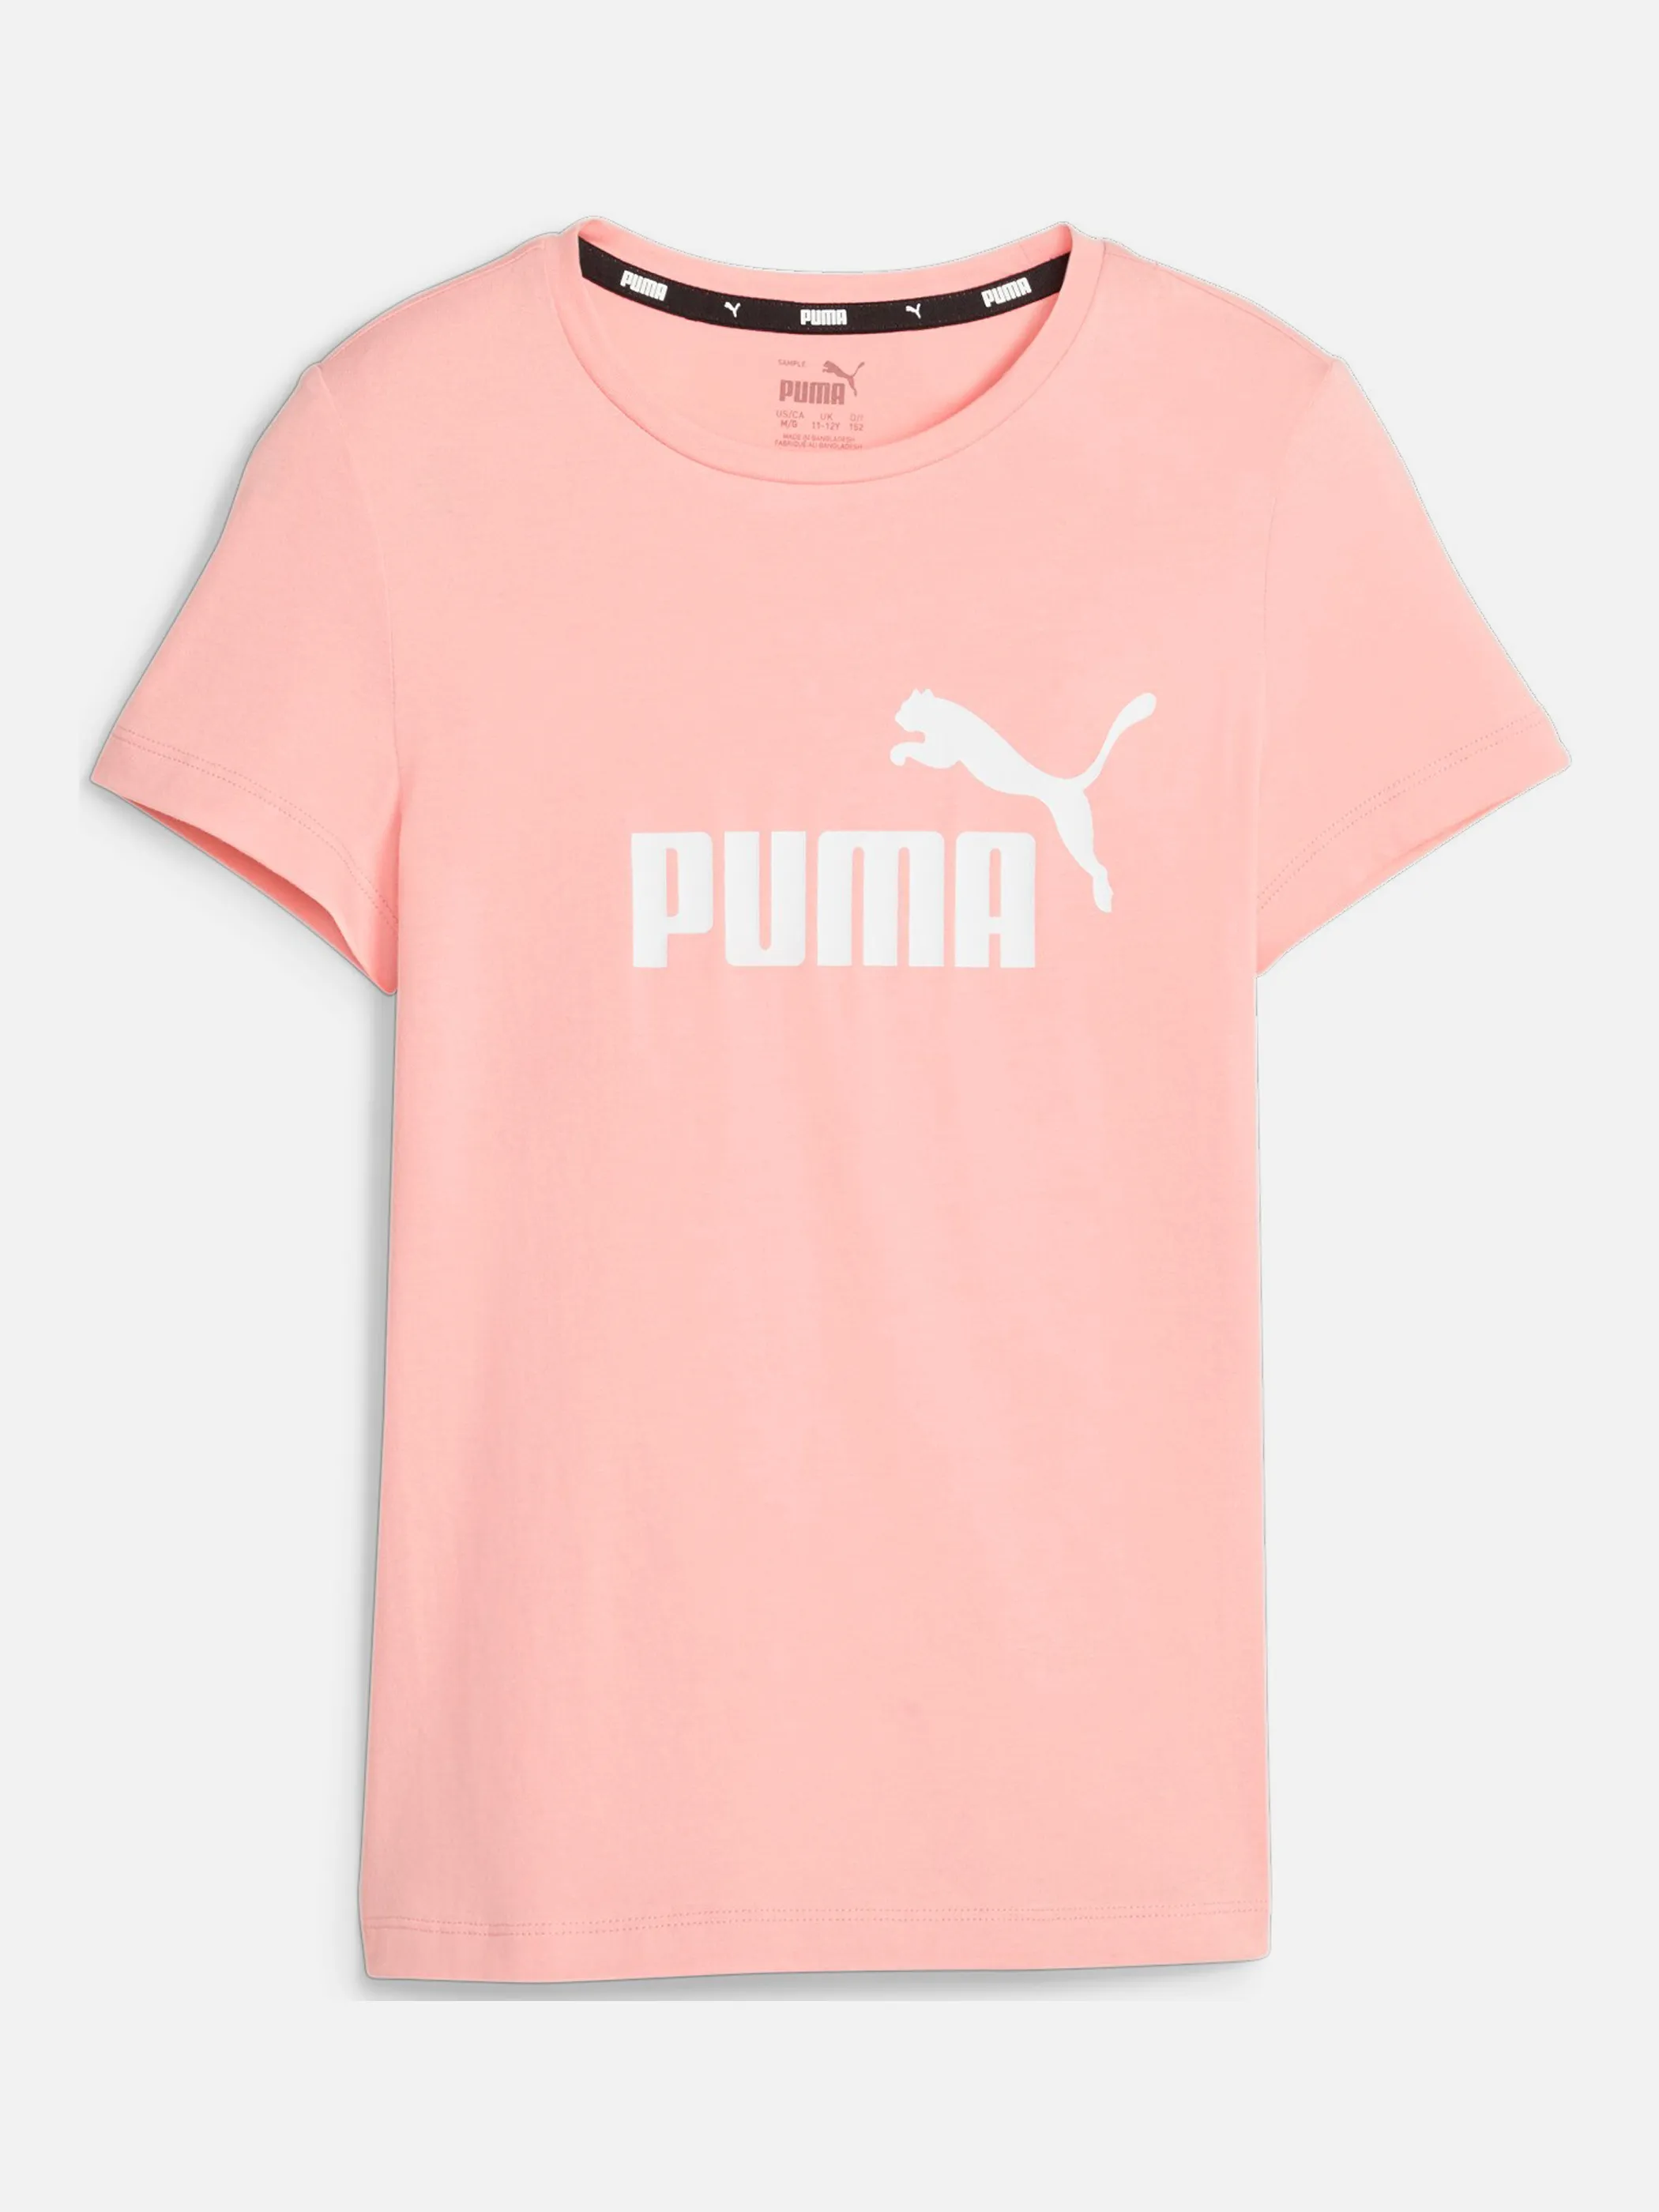 Puma 587029 Md-T-Shirt mit Logo Pink 856620 94 1